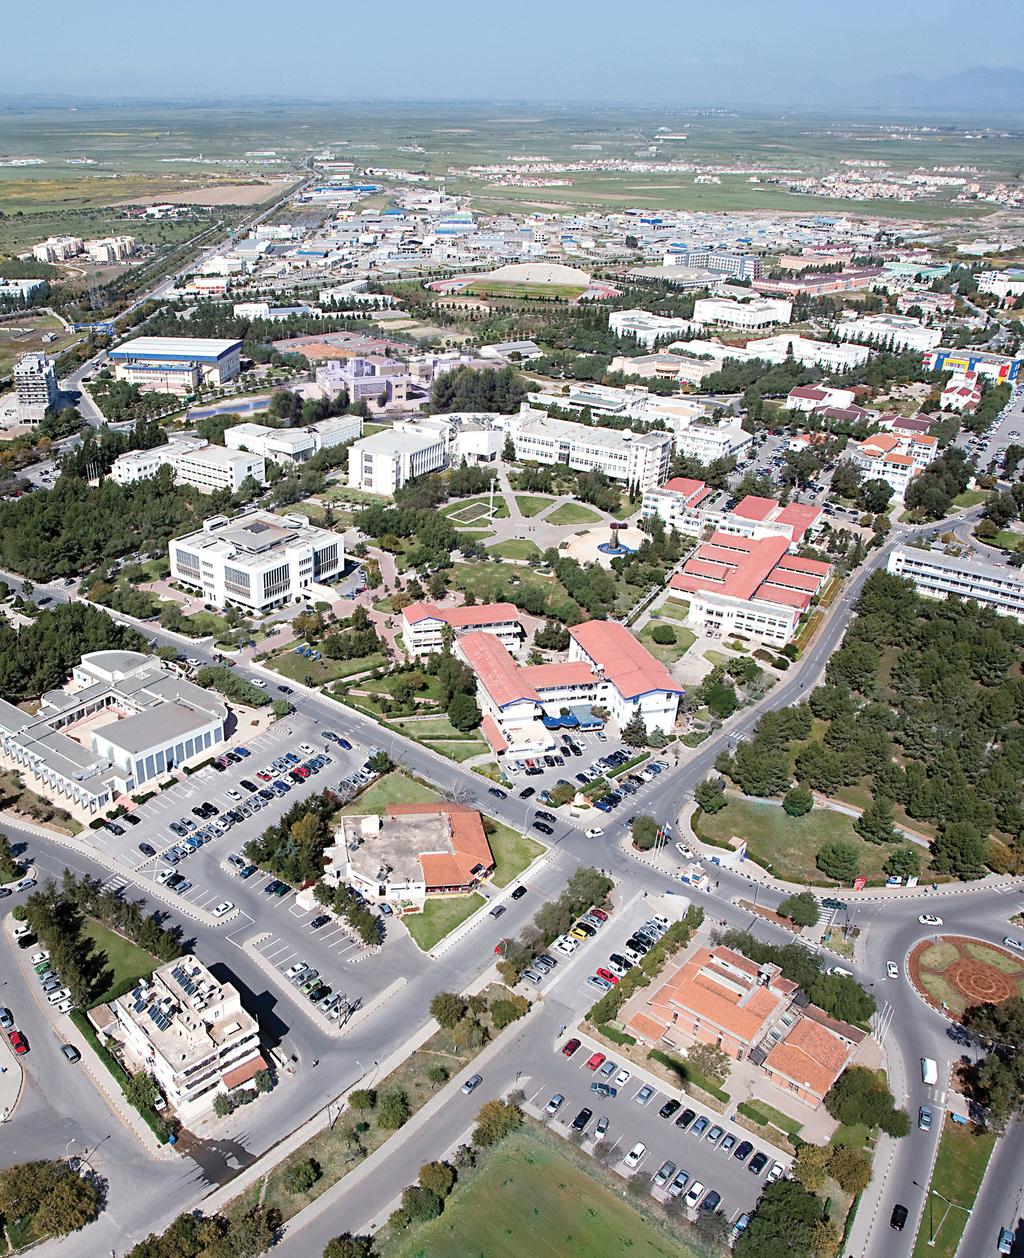 BİLG YÜKS Doğu Akdeniz Üniversitesi nin Öğrencilerine Sunduğu Ayrıcalıklı Olanaklar 11 Fakülte ve 5 Yüksekokul da 95 programda lisans ve önlisans, 77 programda lisansüstü eğitim Öğrenci değişim